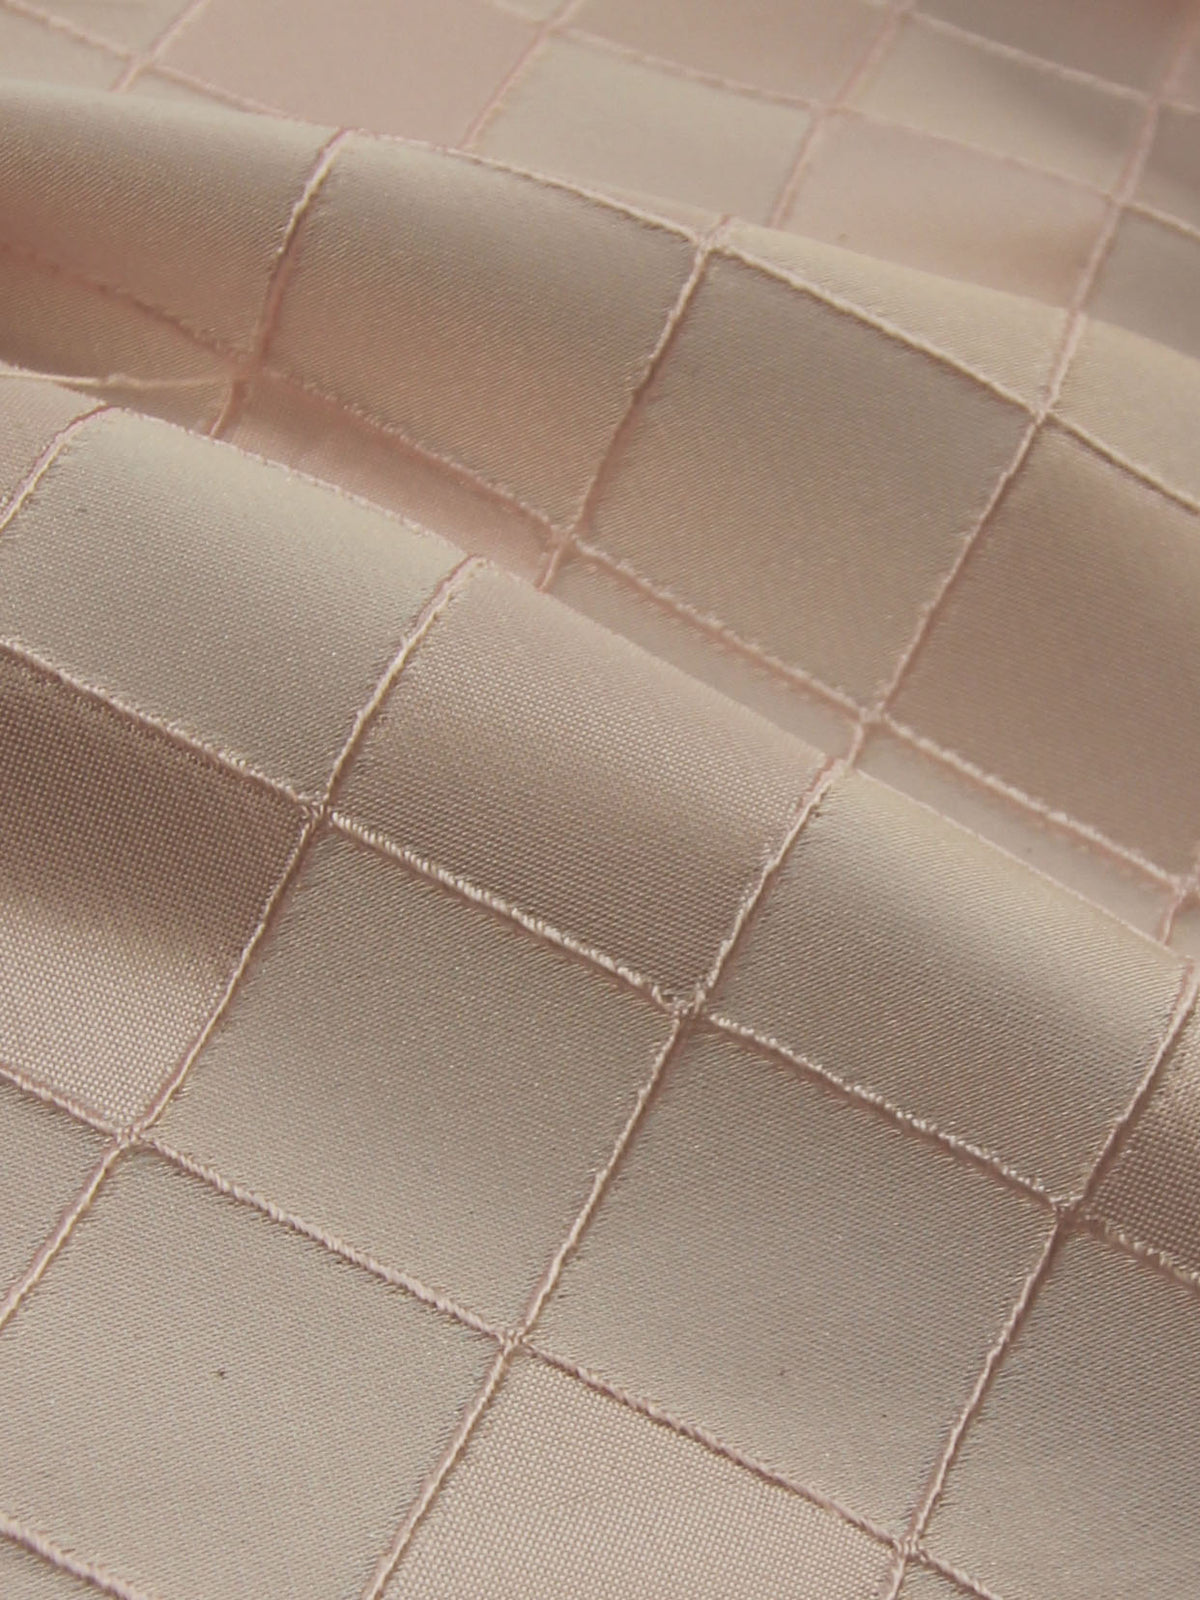 Waistcoat Fabric - Malton